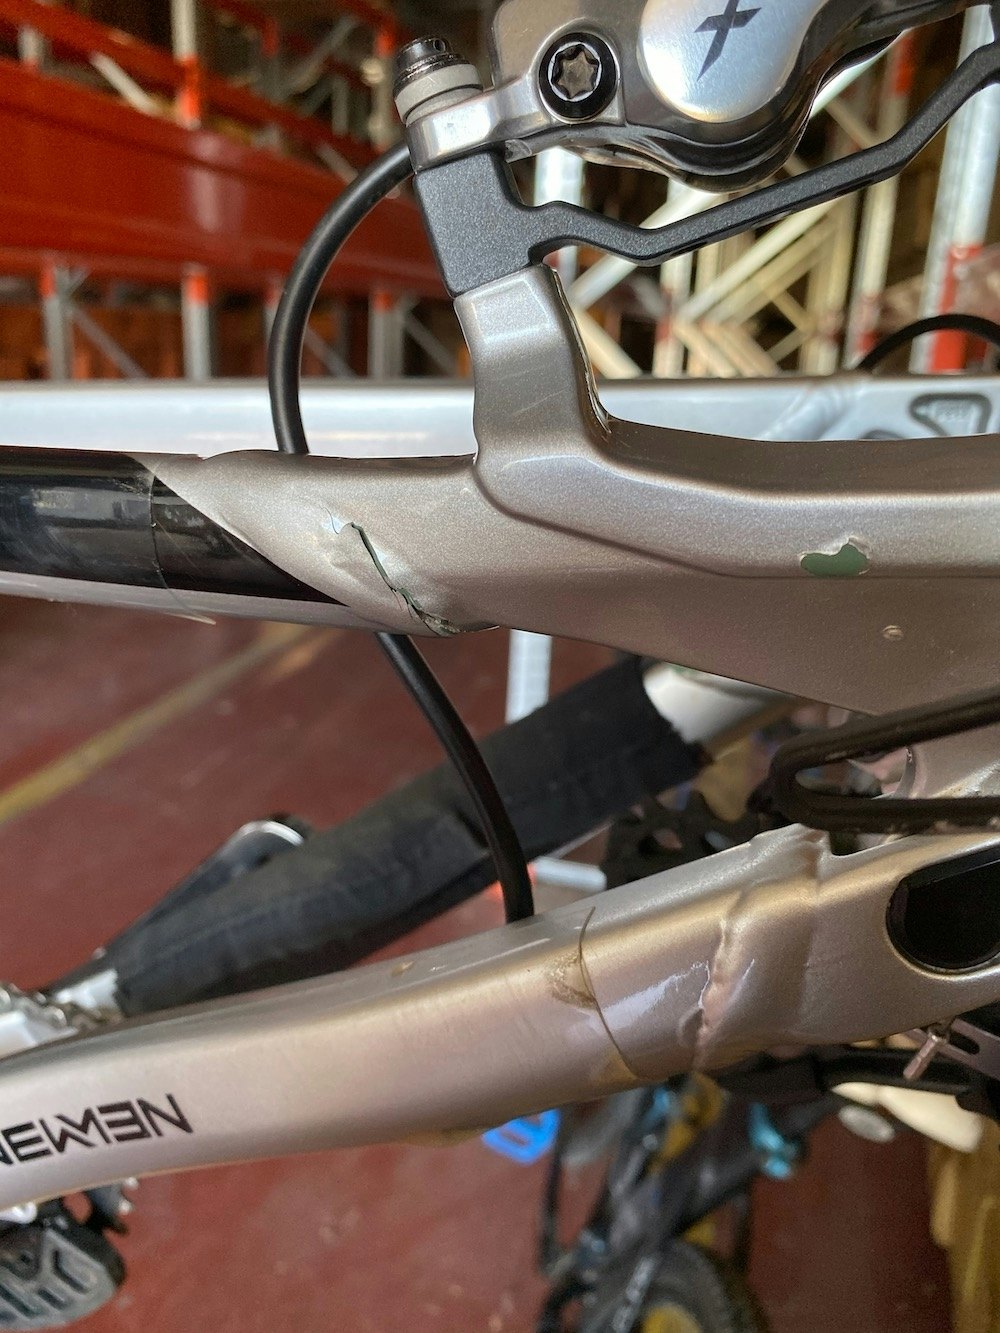 Zakarias Blom Johansens sykkel ble ødelagt i flytransporten